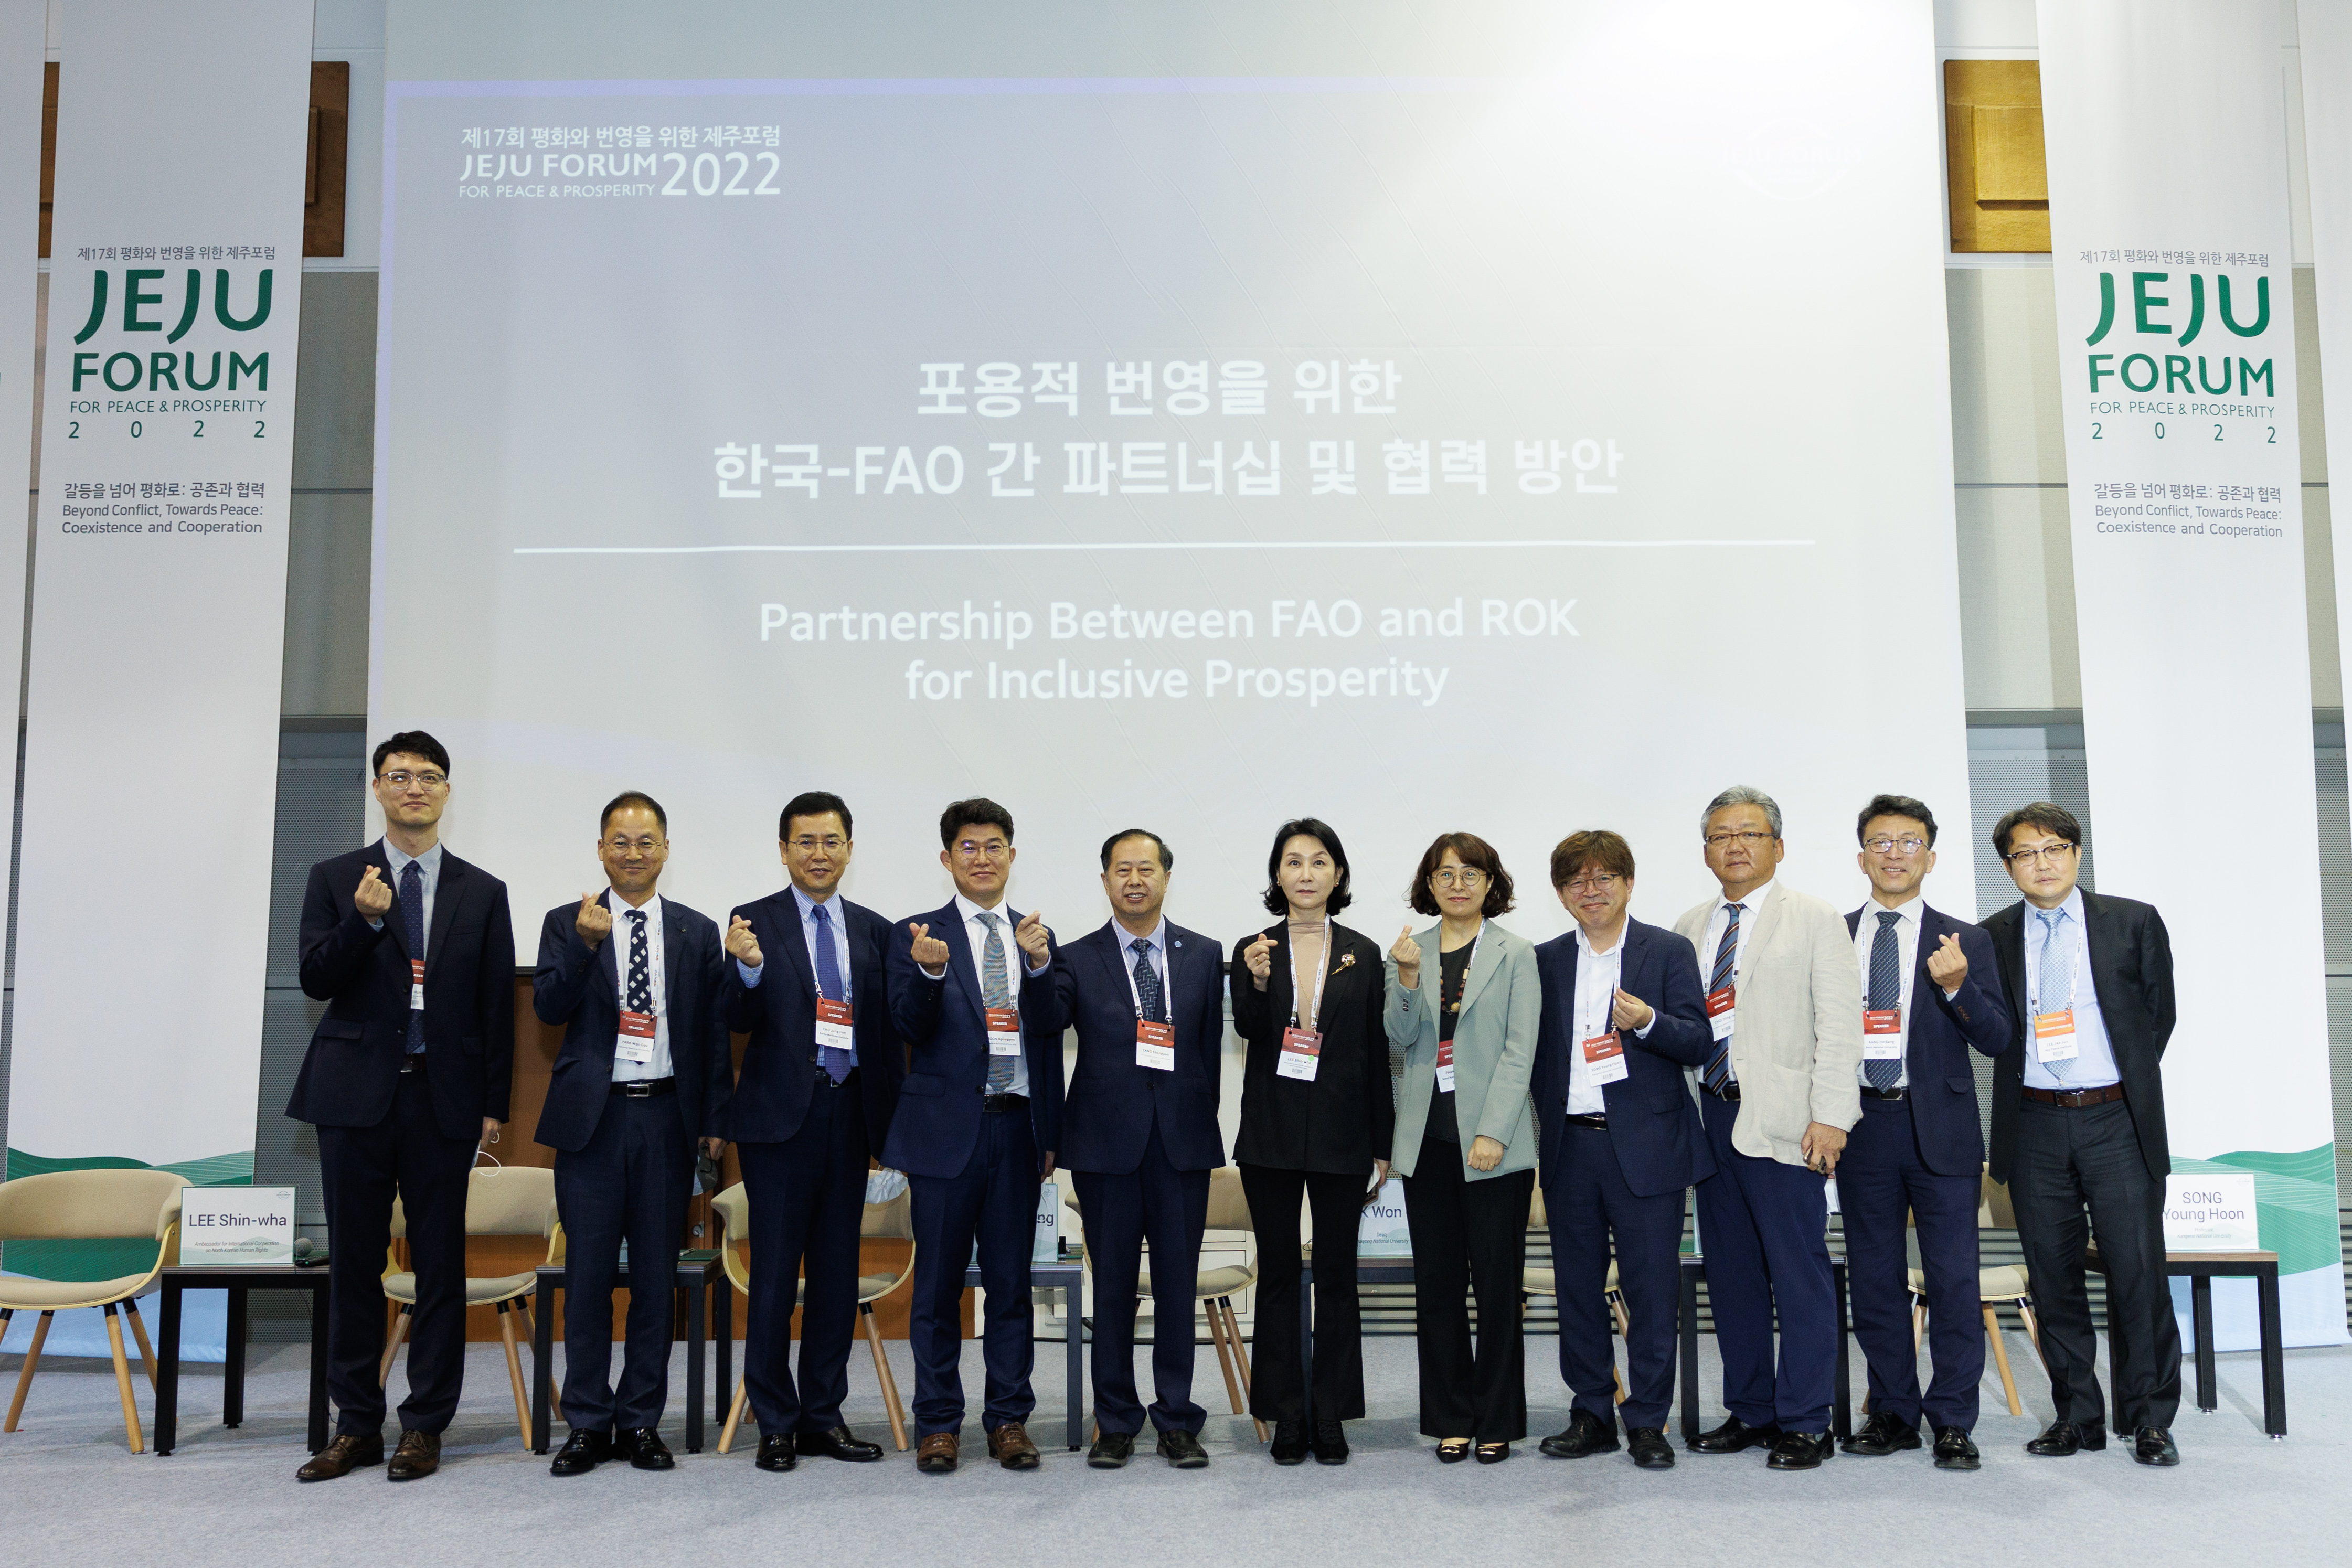 [2022 제주포럼] 포용적 번영을 위한 한국-FAO 간 파트너십 및 협력 방안